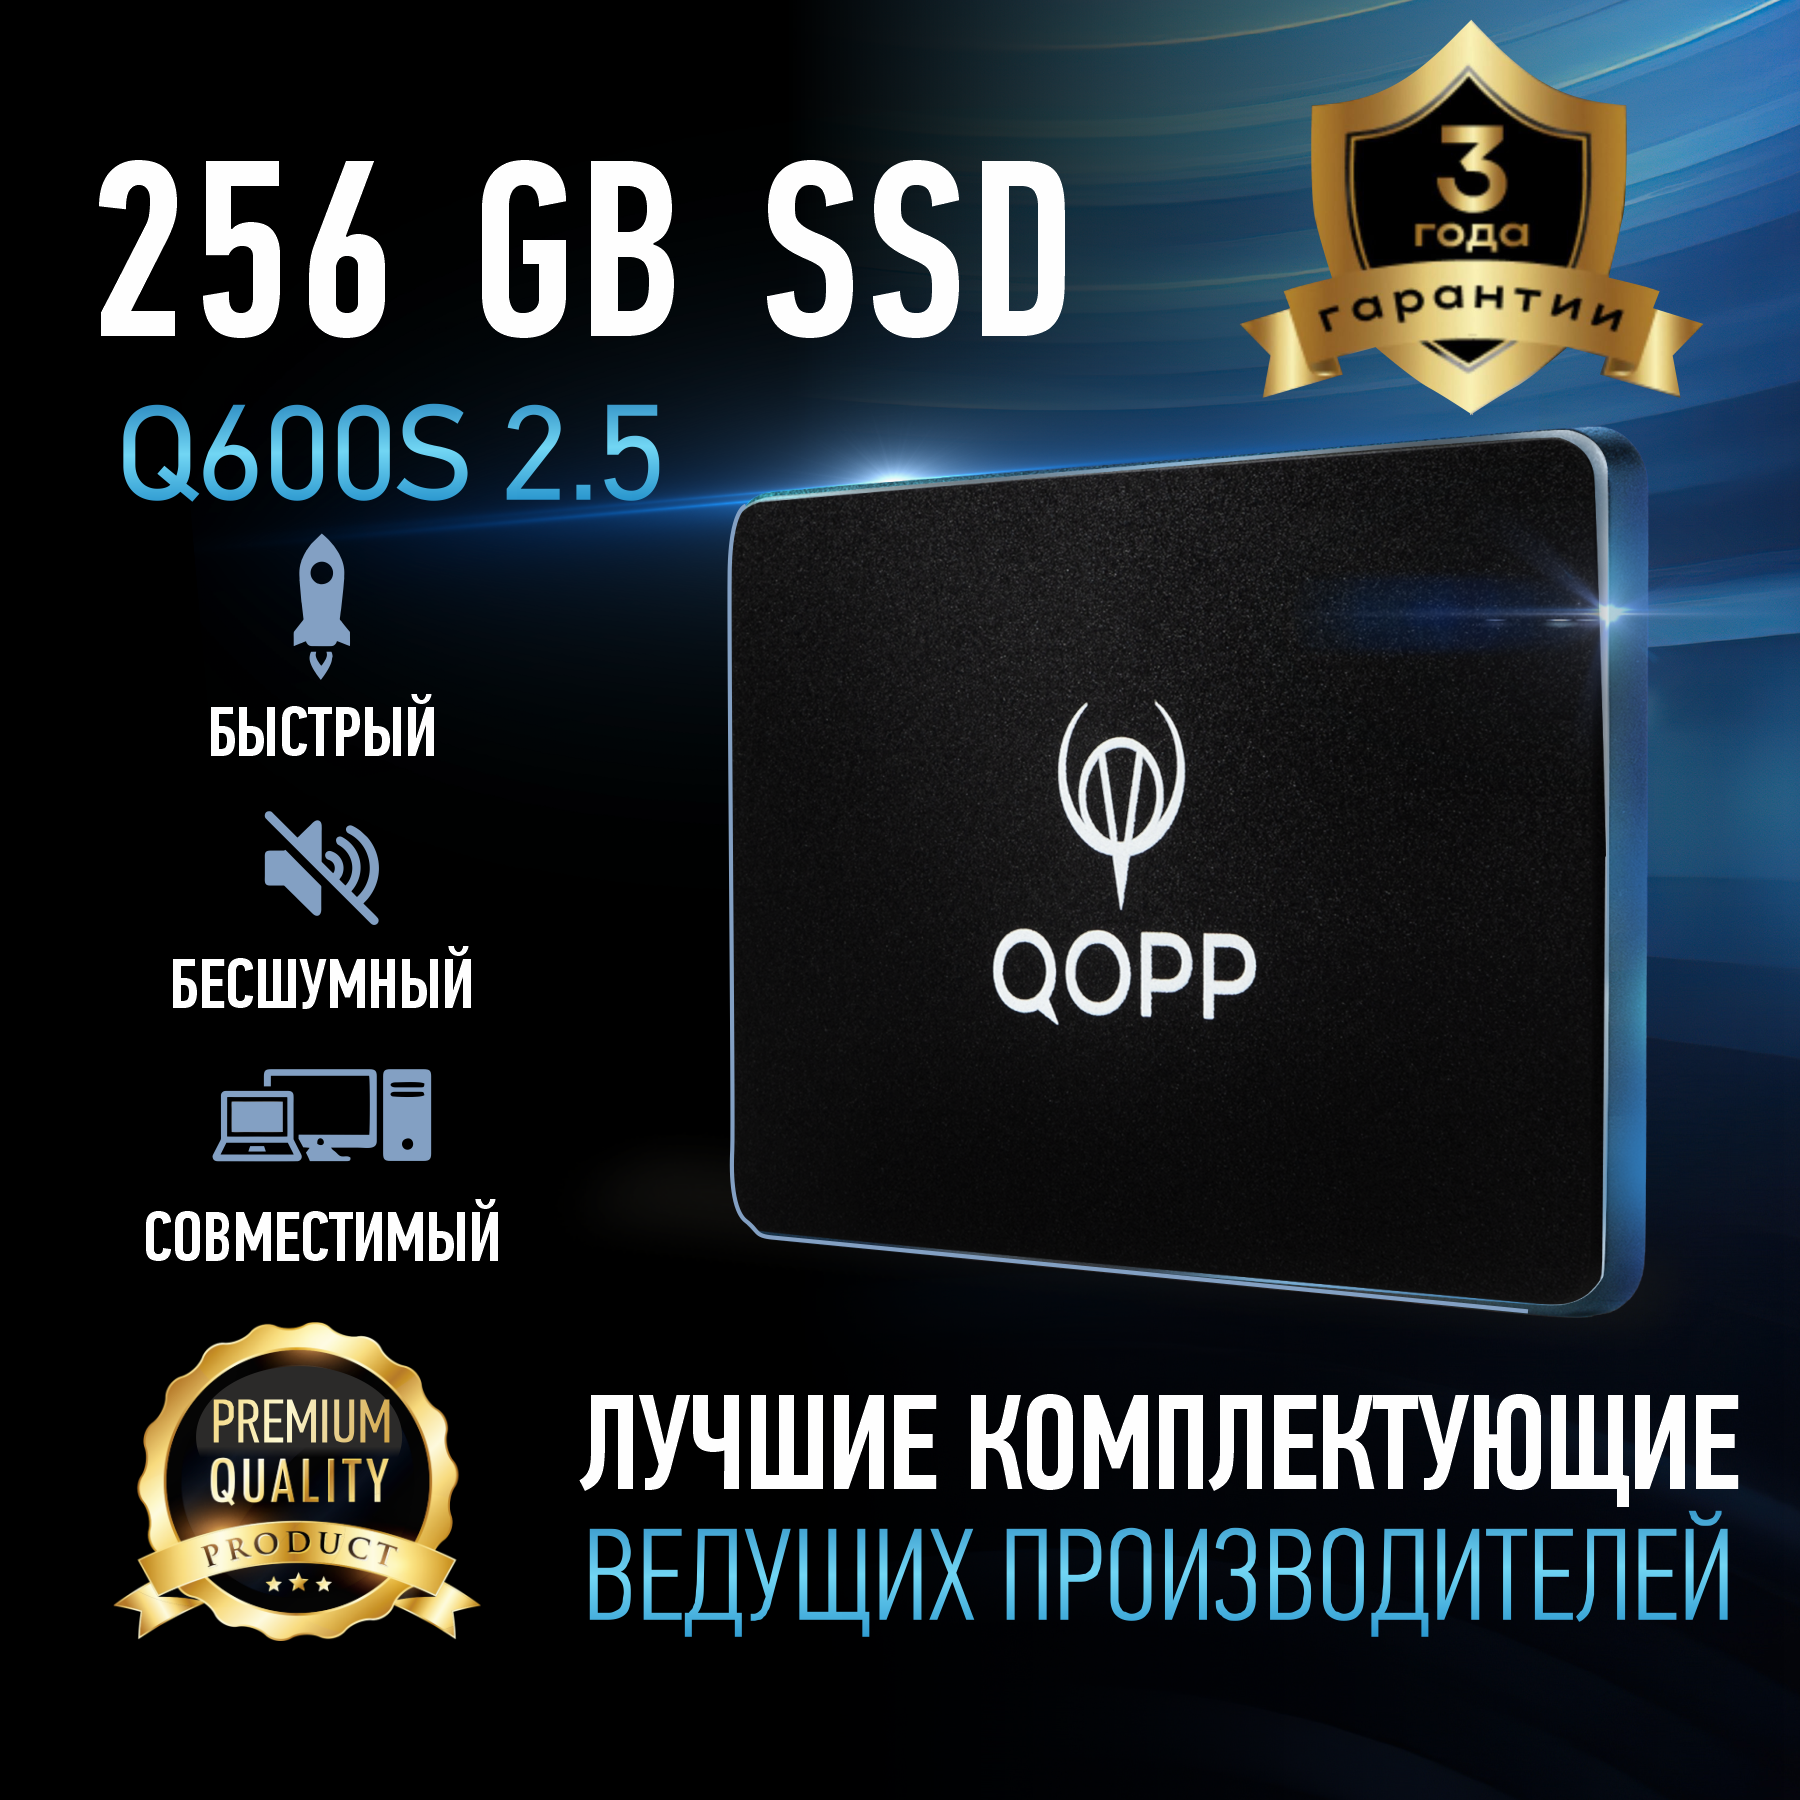 256 GB Внутренний SSD накопитель QOPP 2.5 SATA3 6.0 Гбит/с, жесткий диск для ноутбука и компьютера